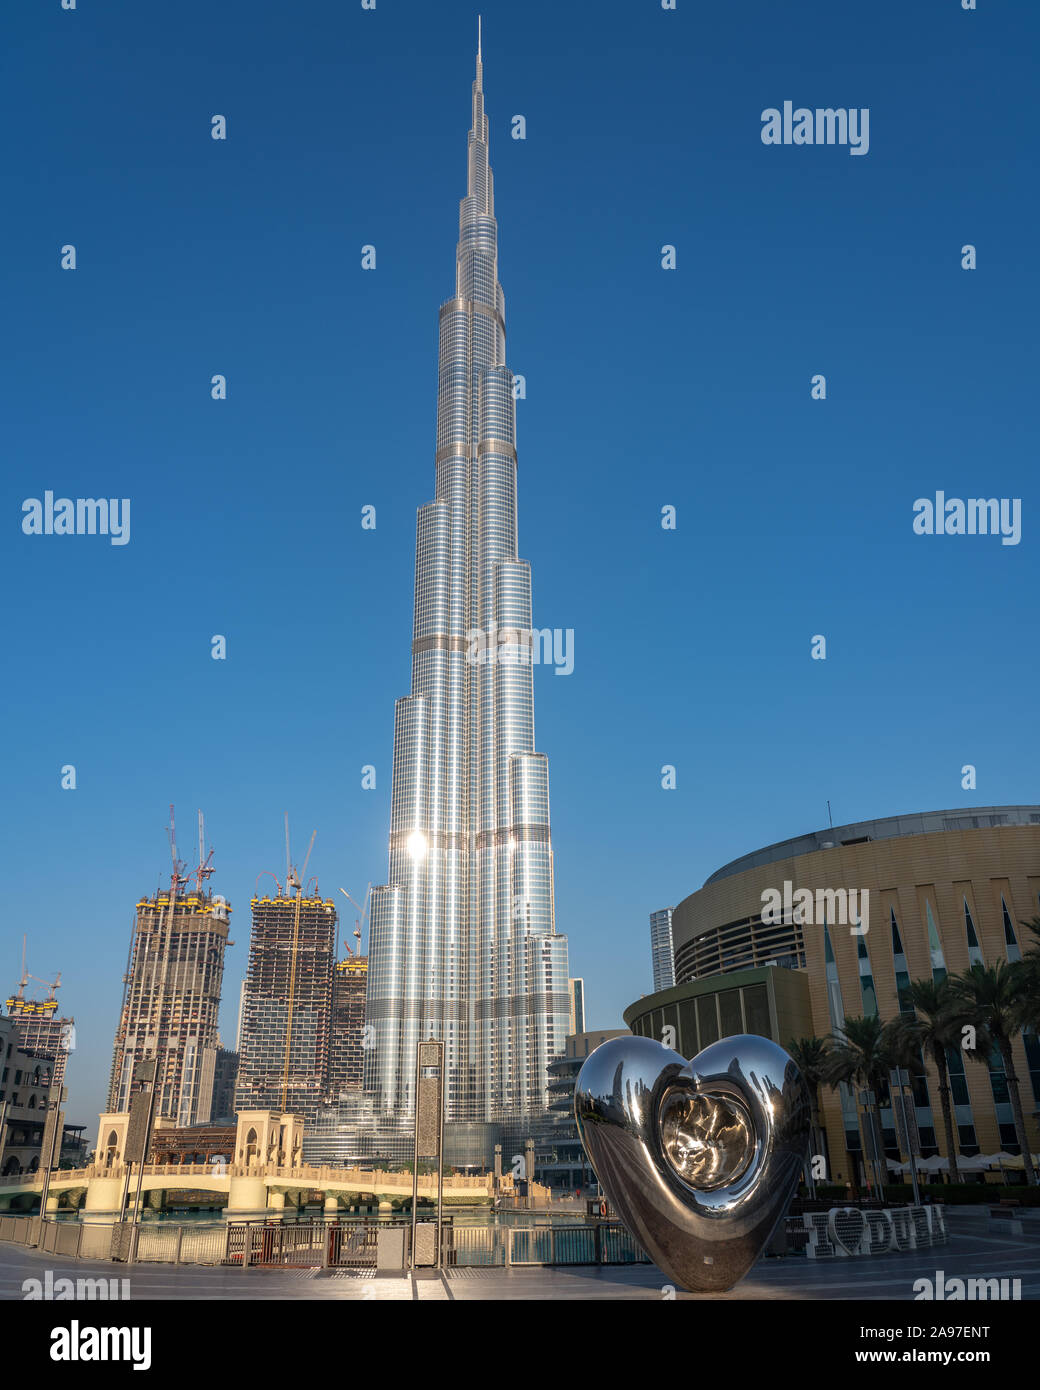 Burji Khalifa, l'edificio più alto del mondo, che domina il centro di Dubai Emirati Arabi Uniti. Foto Stock